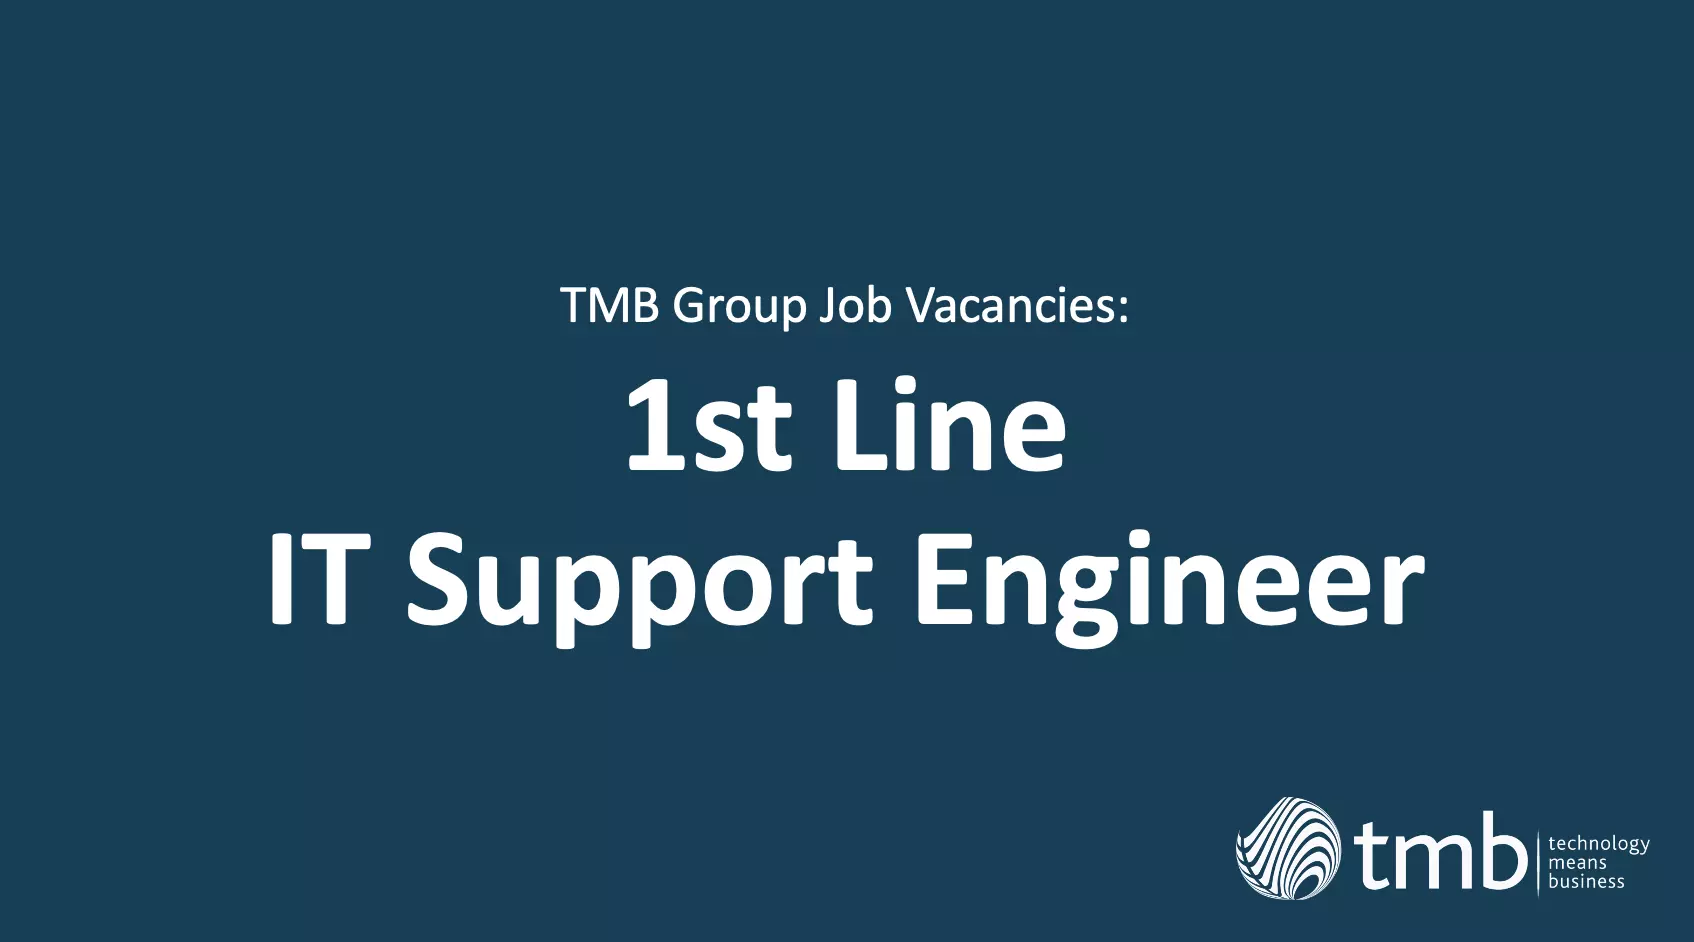 1st Line IT Support Engineer Vacancies